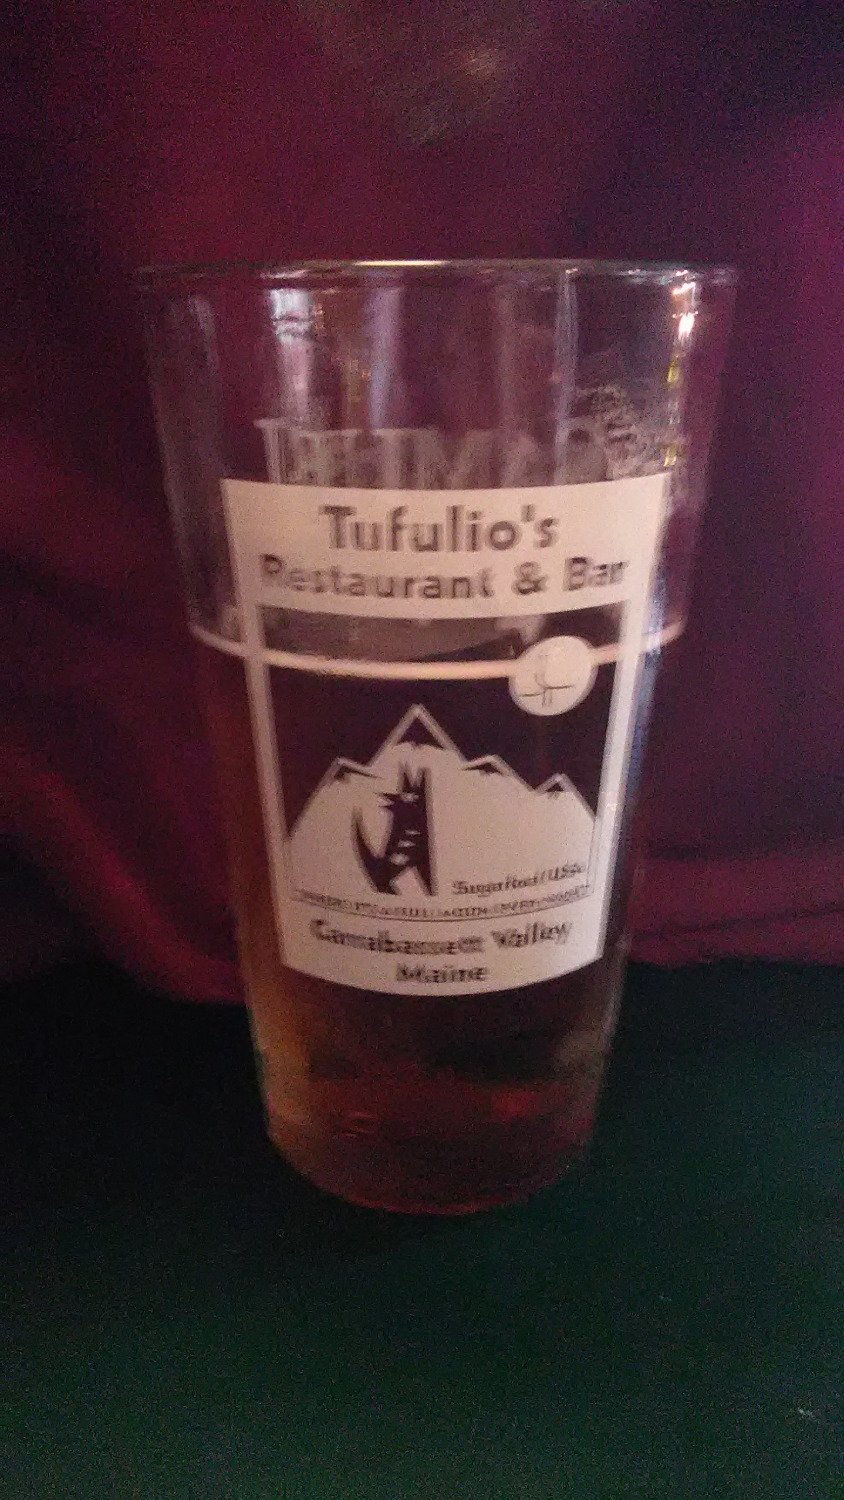 Tufulio`s Restaurant & Bar